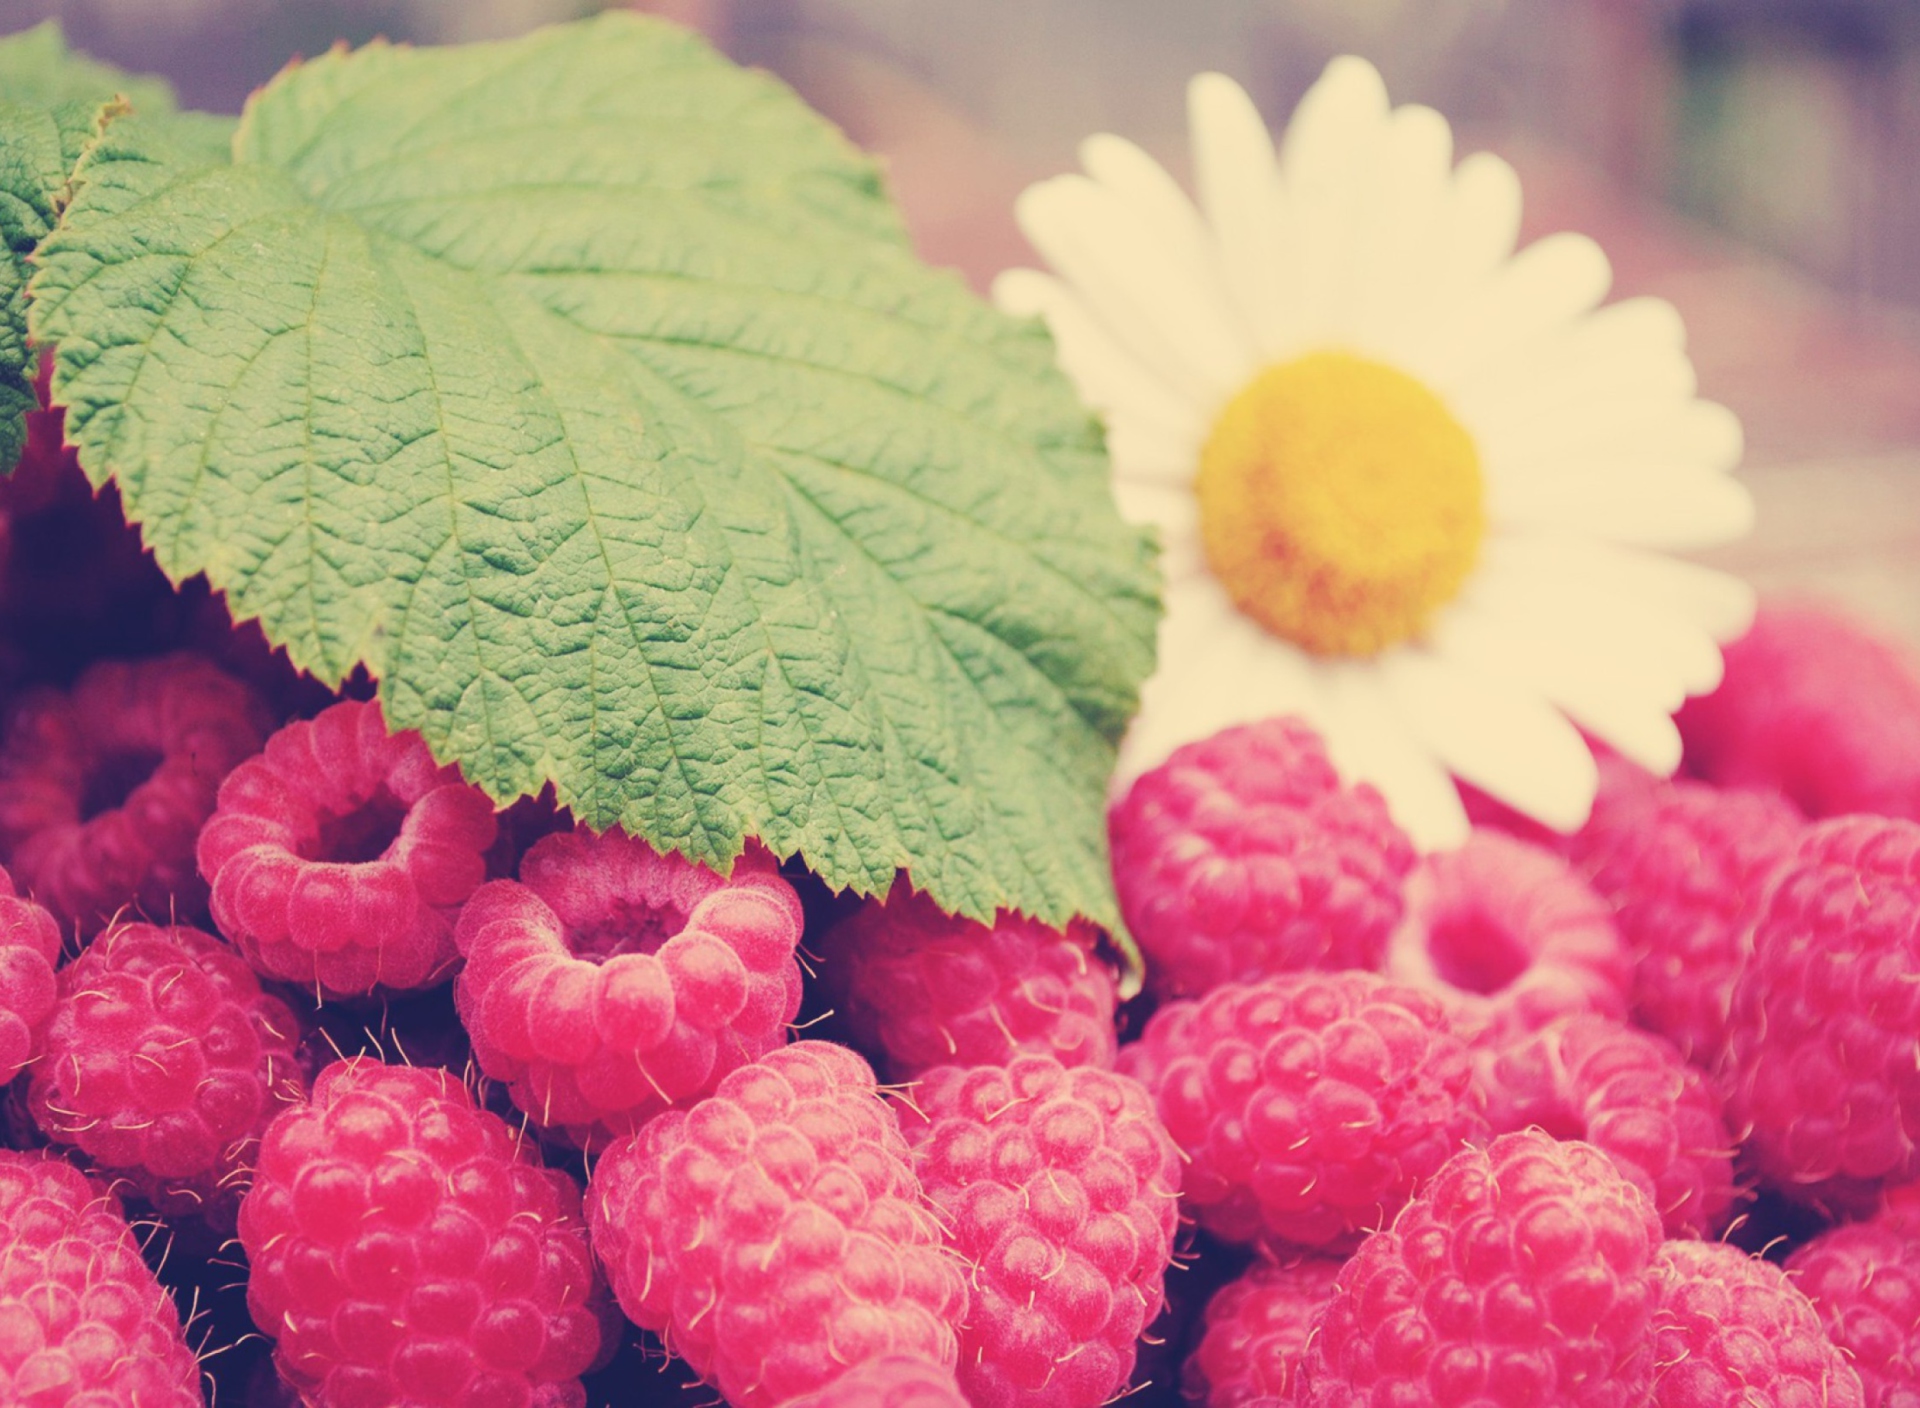 Raspberries And Daisy screenshot #1 1920x1408